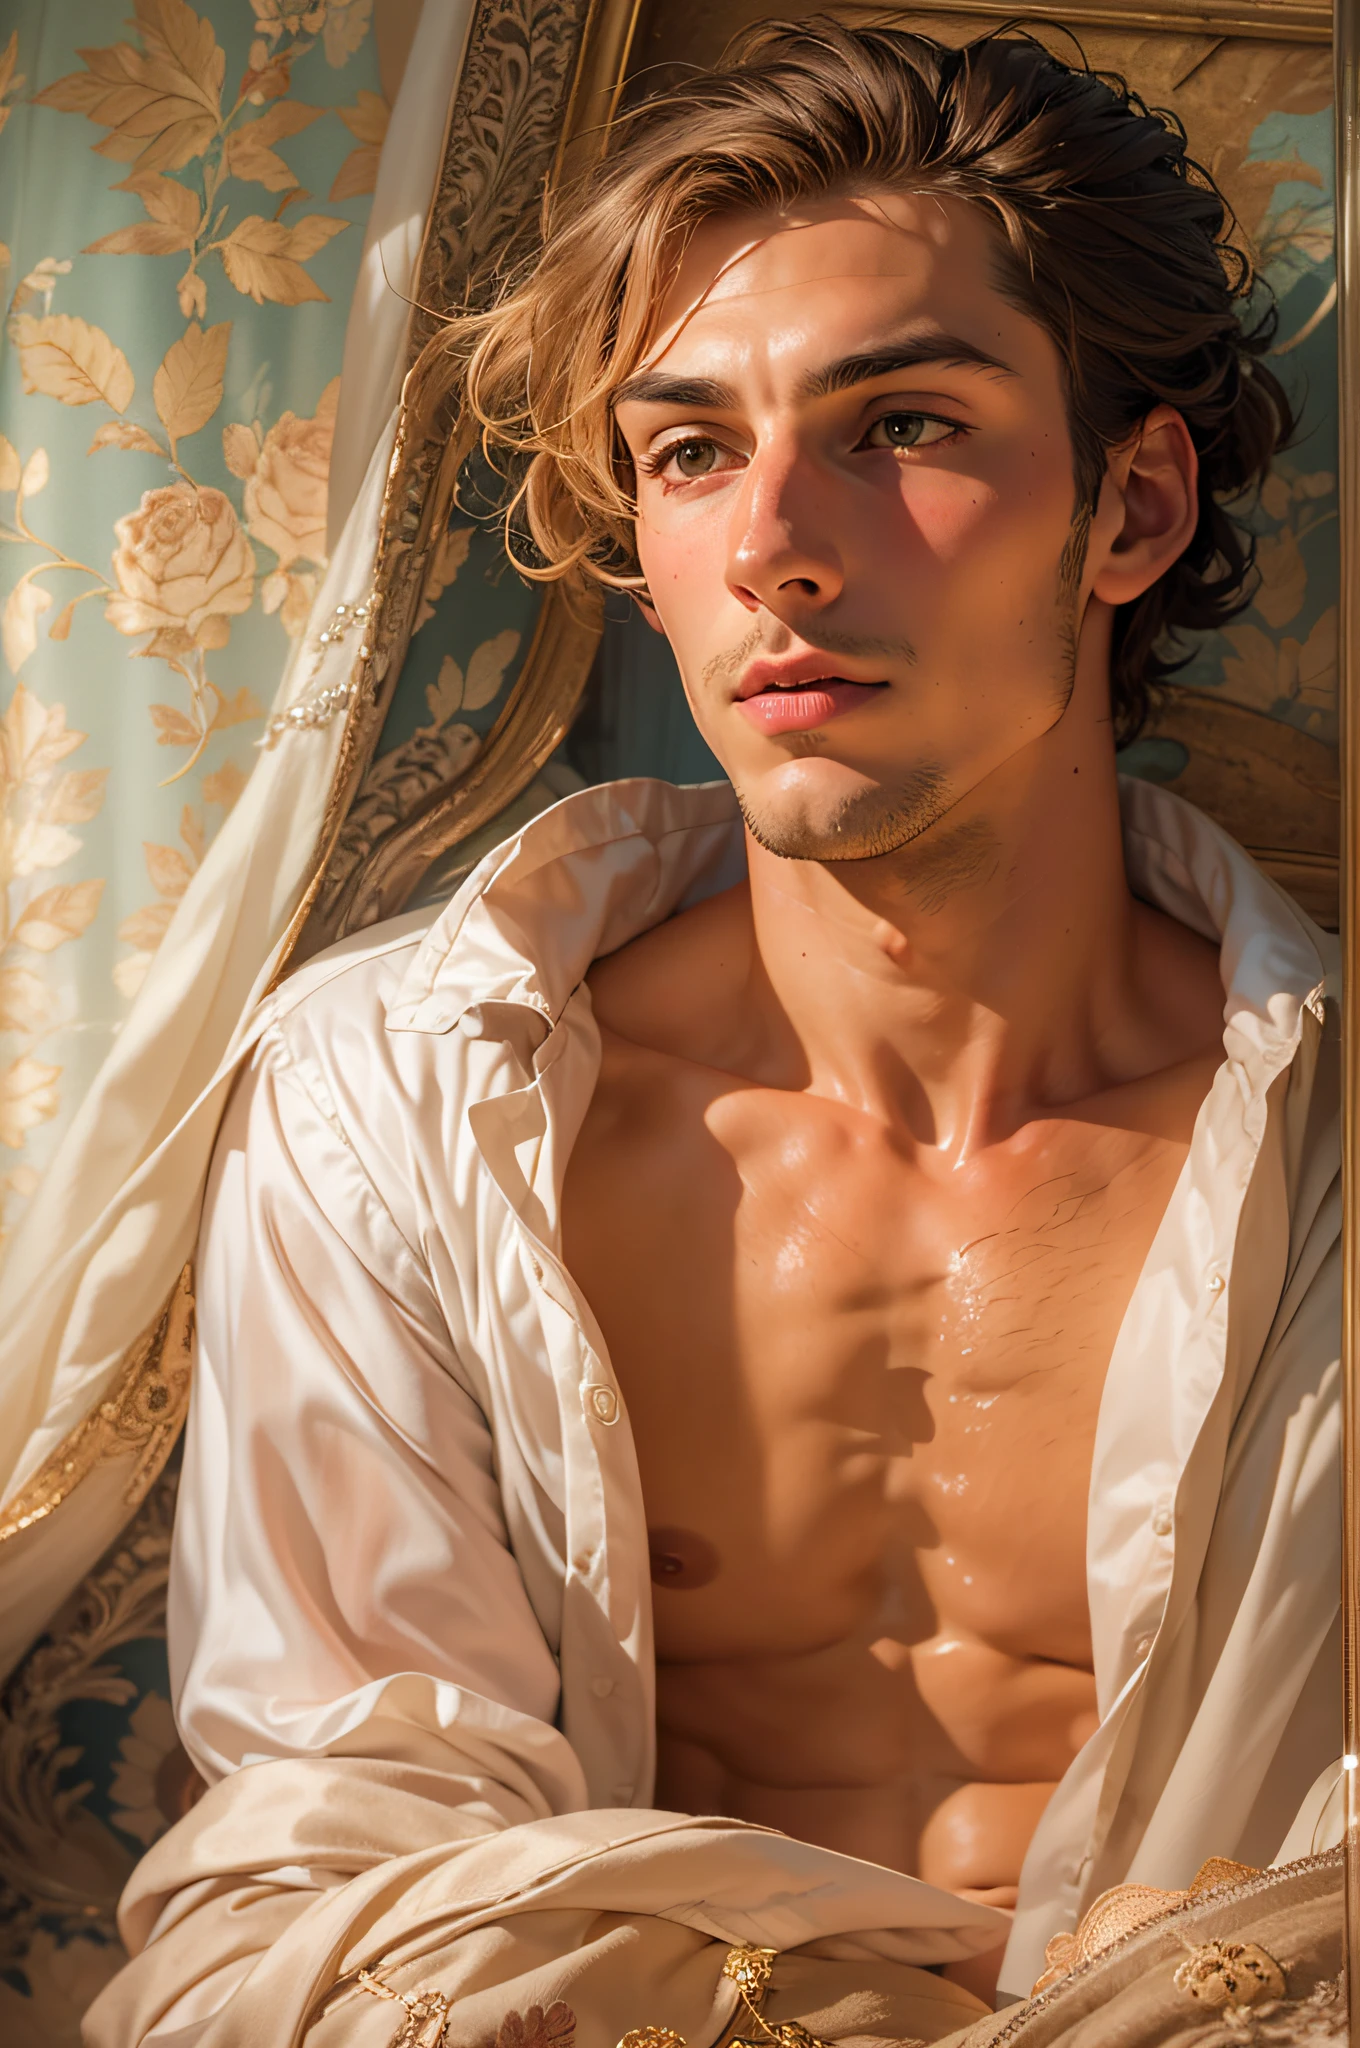 運動型的, 臥室裡有一位英俊的 15 世紀伯爵在浪漫的氛圍中恭候您的光臨, 裸露, 腹股溝蓋著絲綢床單, 誘人的, 色情, 想要性爱